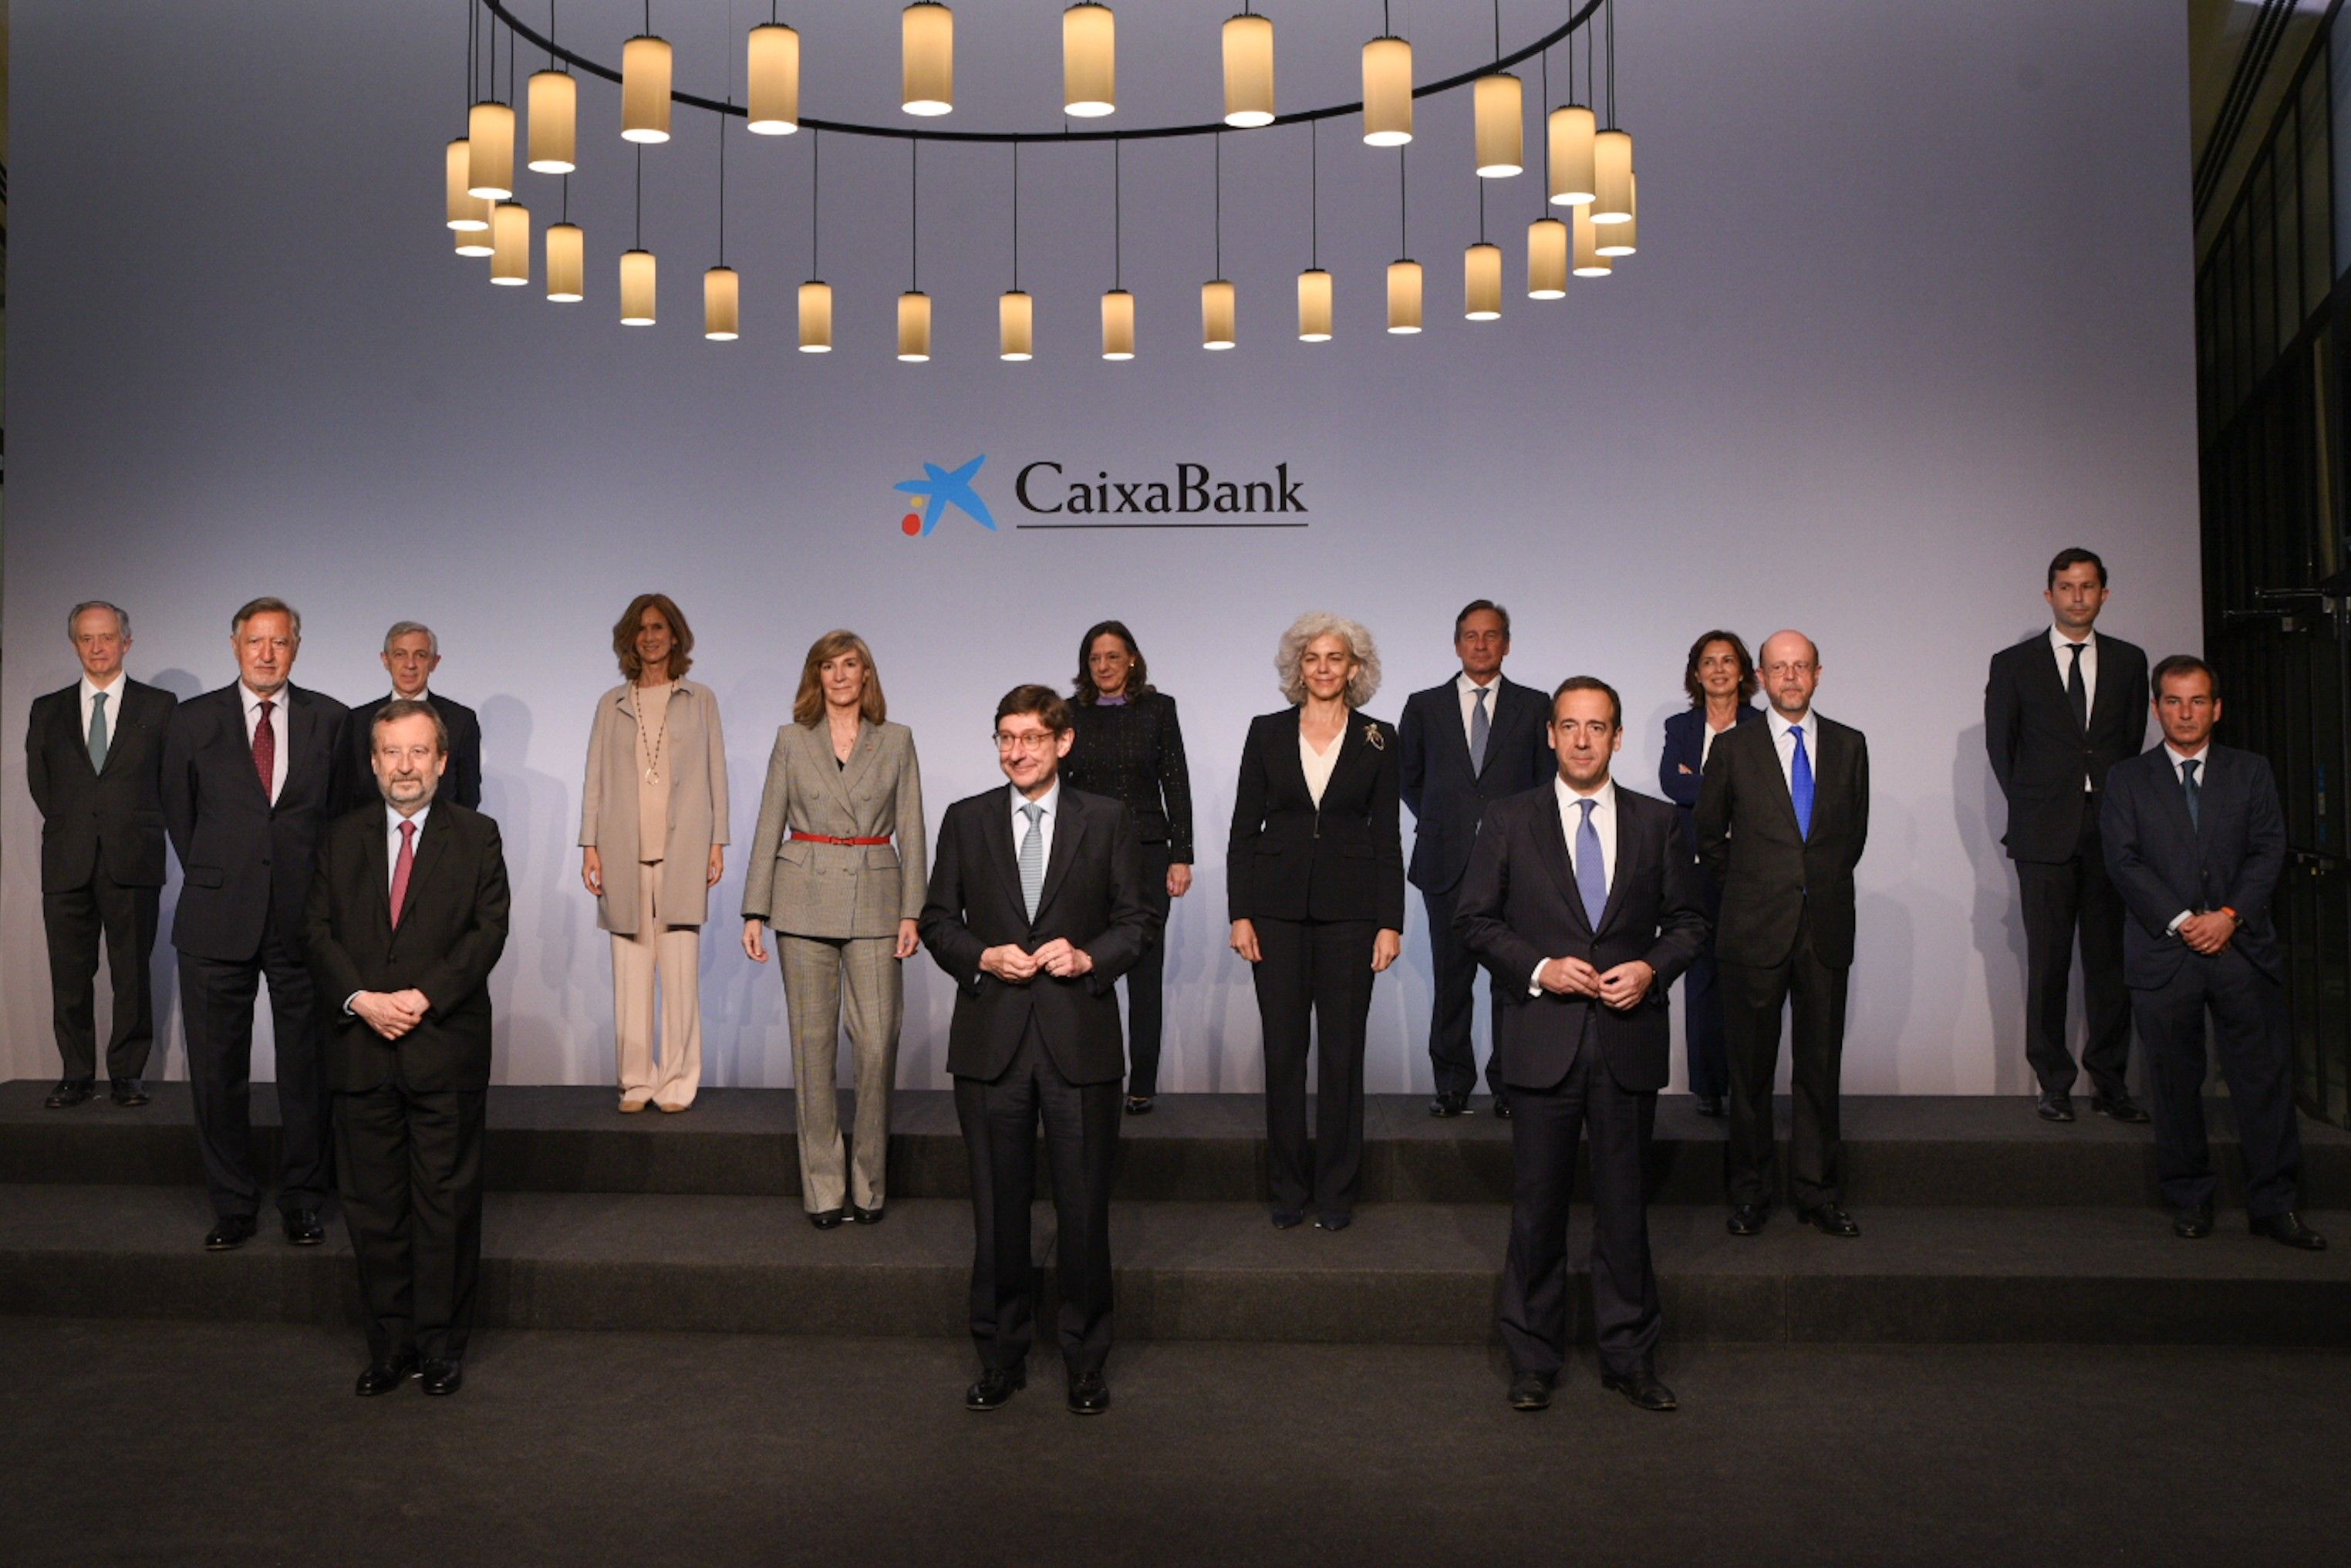 Entidades supervisoras y analistas agradecen el papel clave de CaixaBank en la estabilización del panorama financiero español